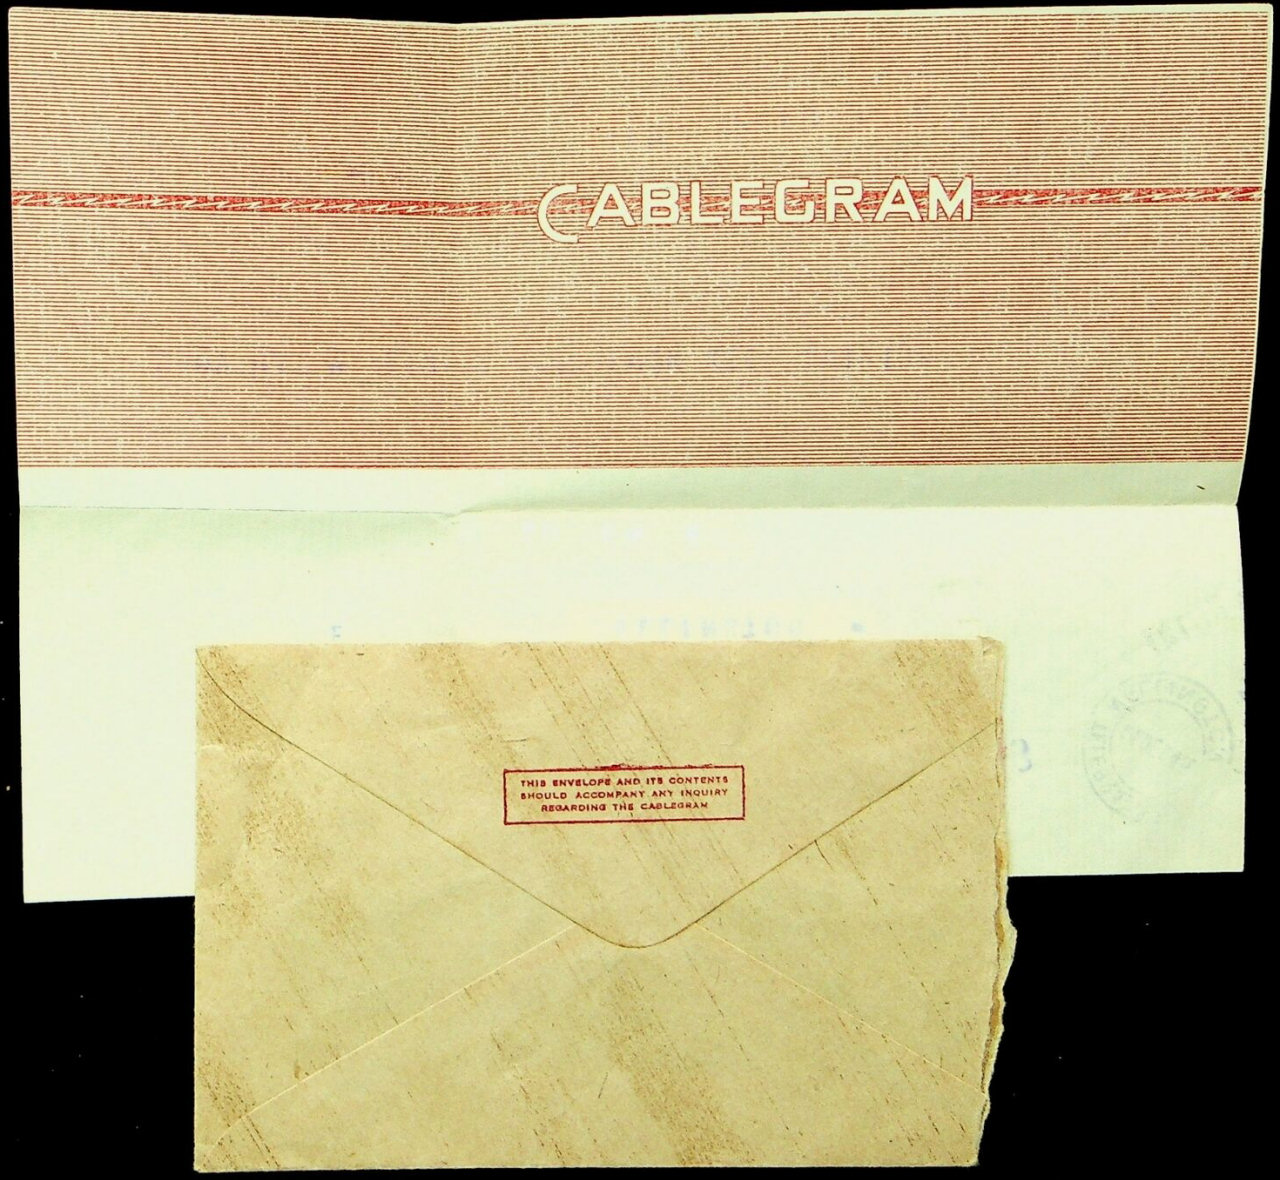 NZ Cablegram 1945 - back with envelope